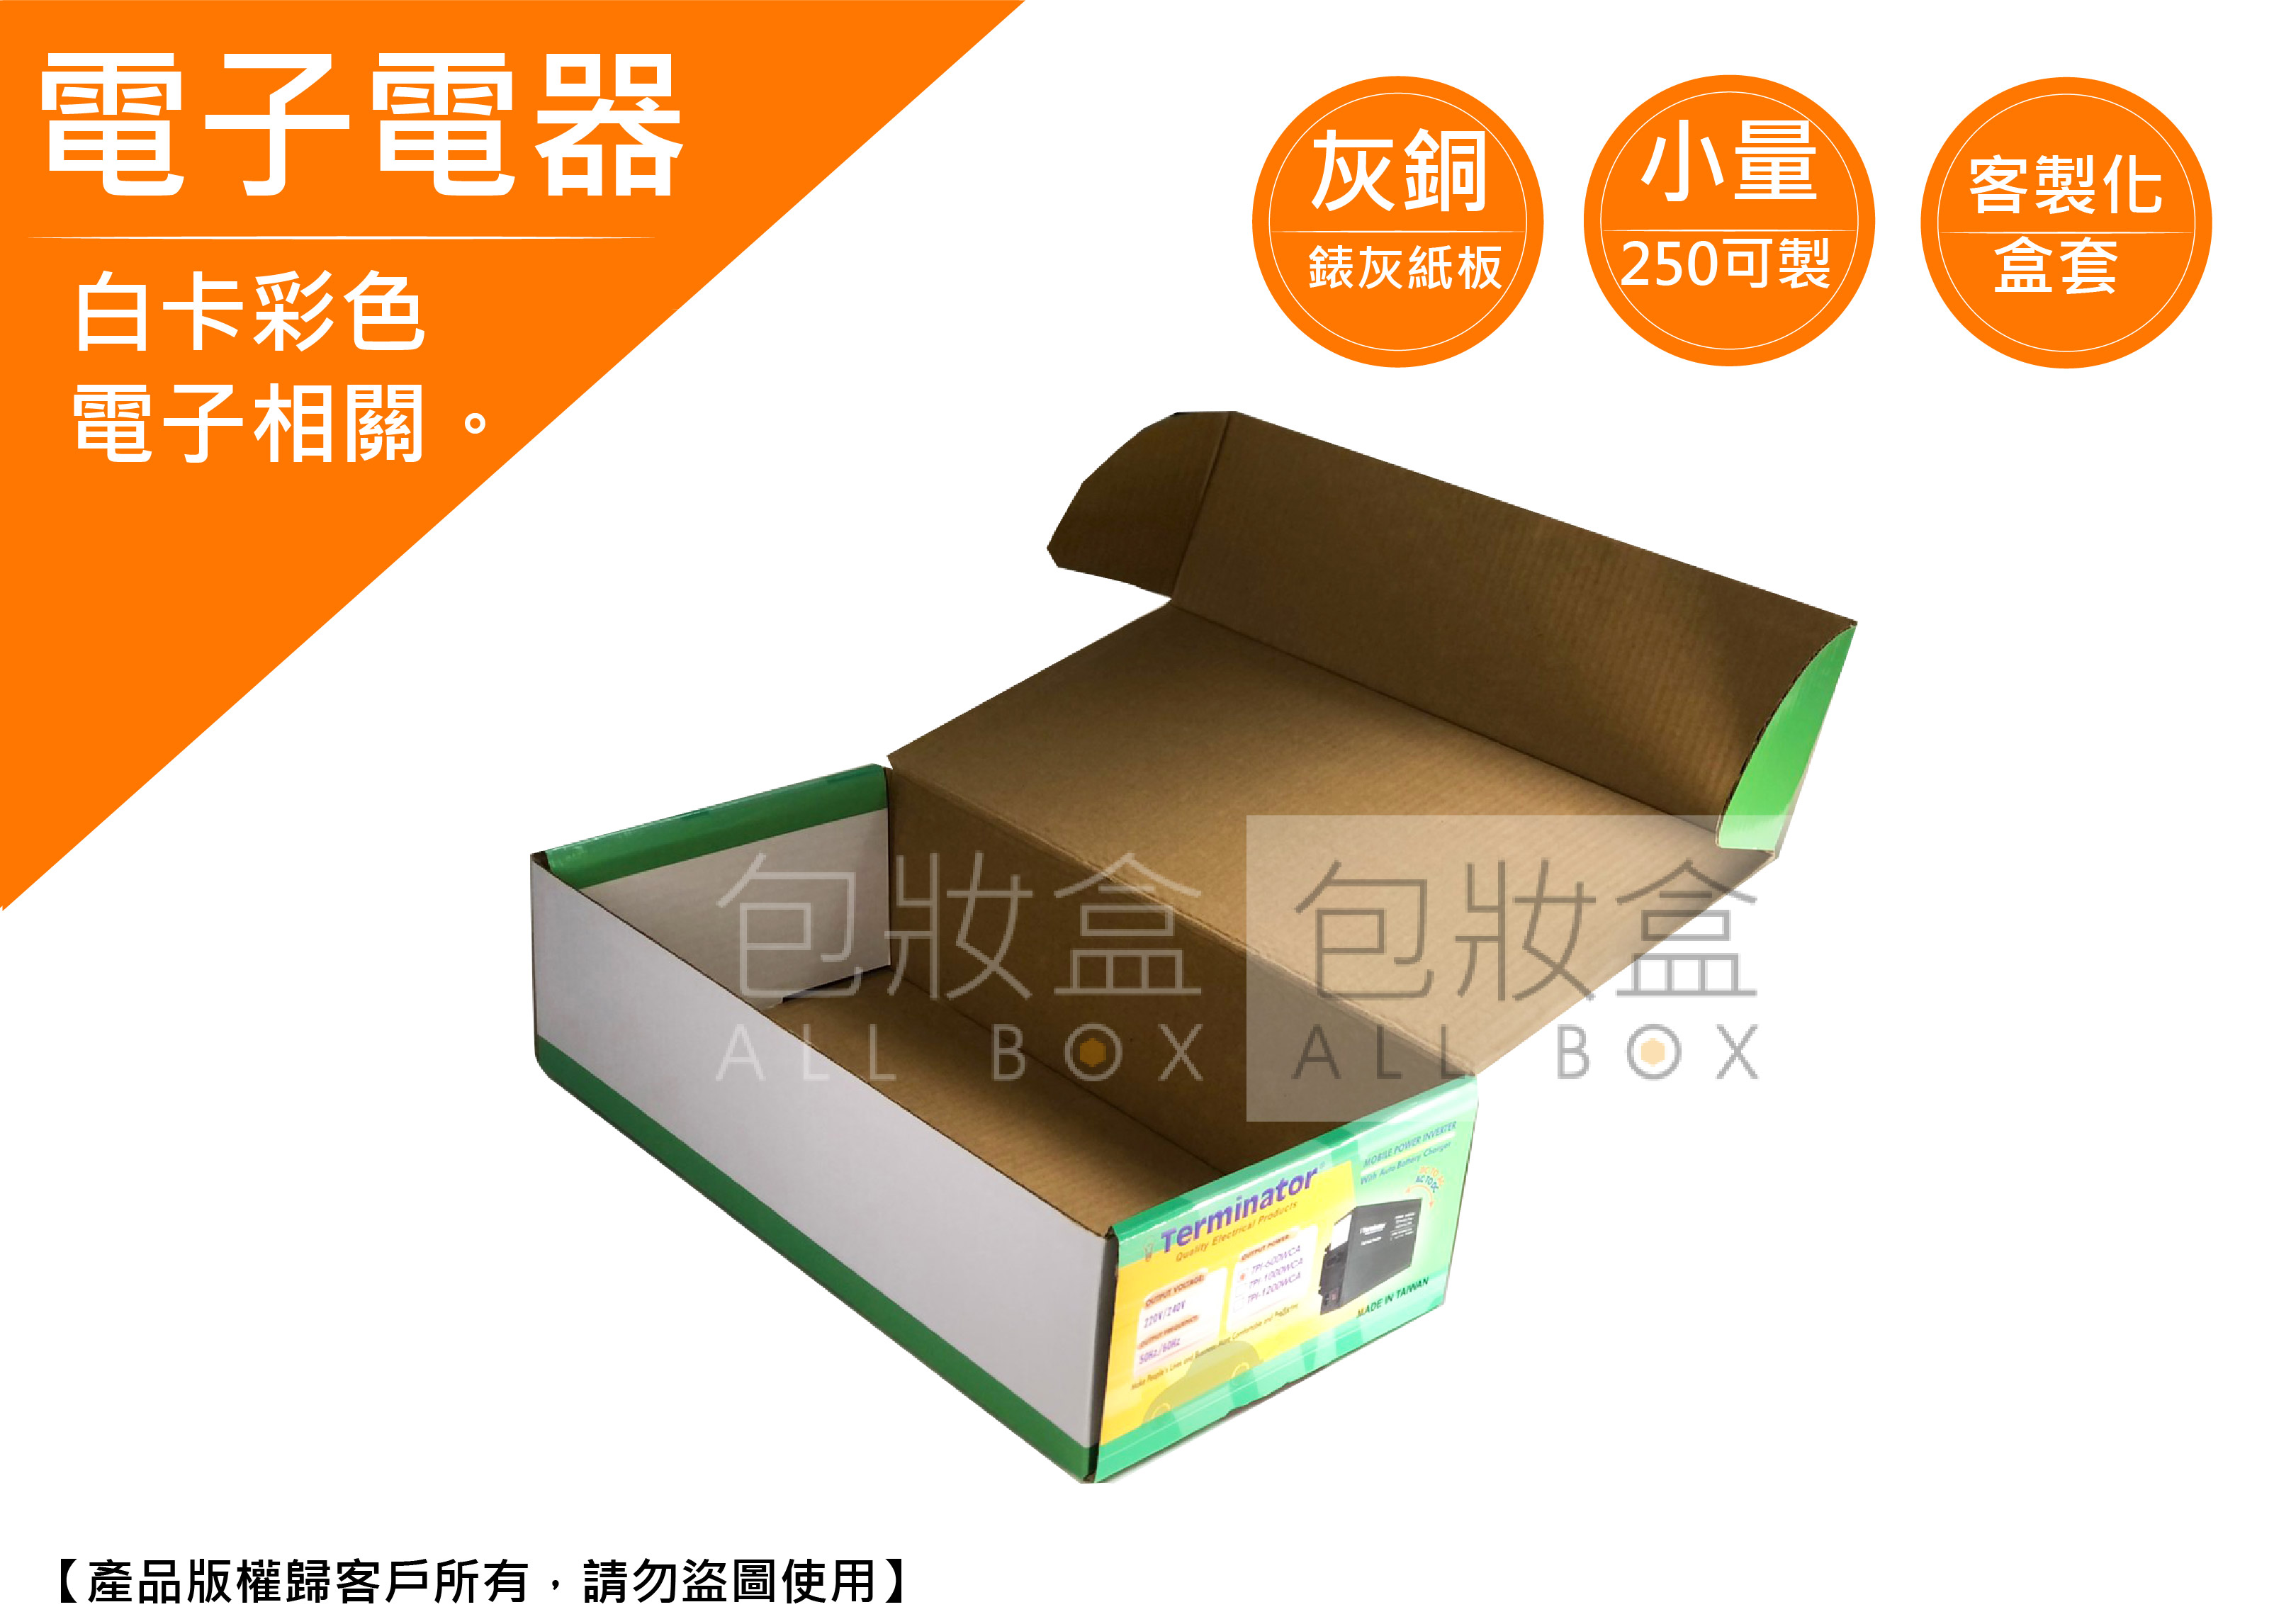 《電子電器業愛用包裝盒》香氛噴霧盒